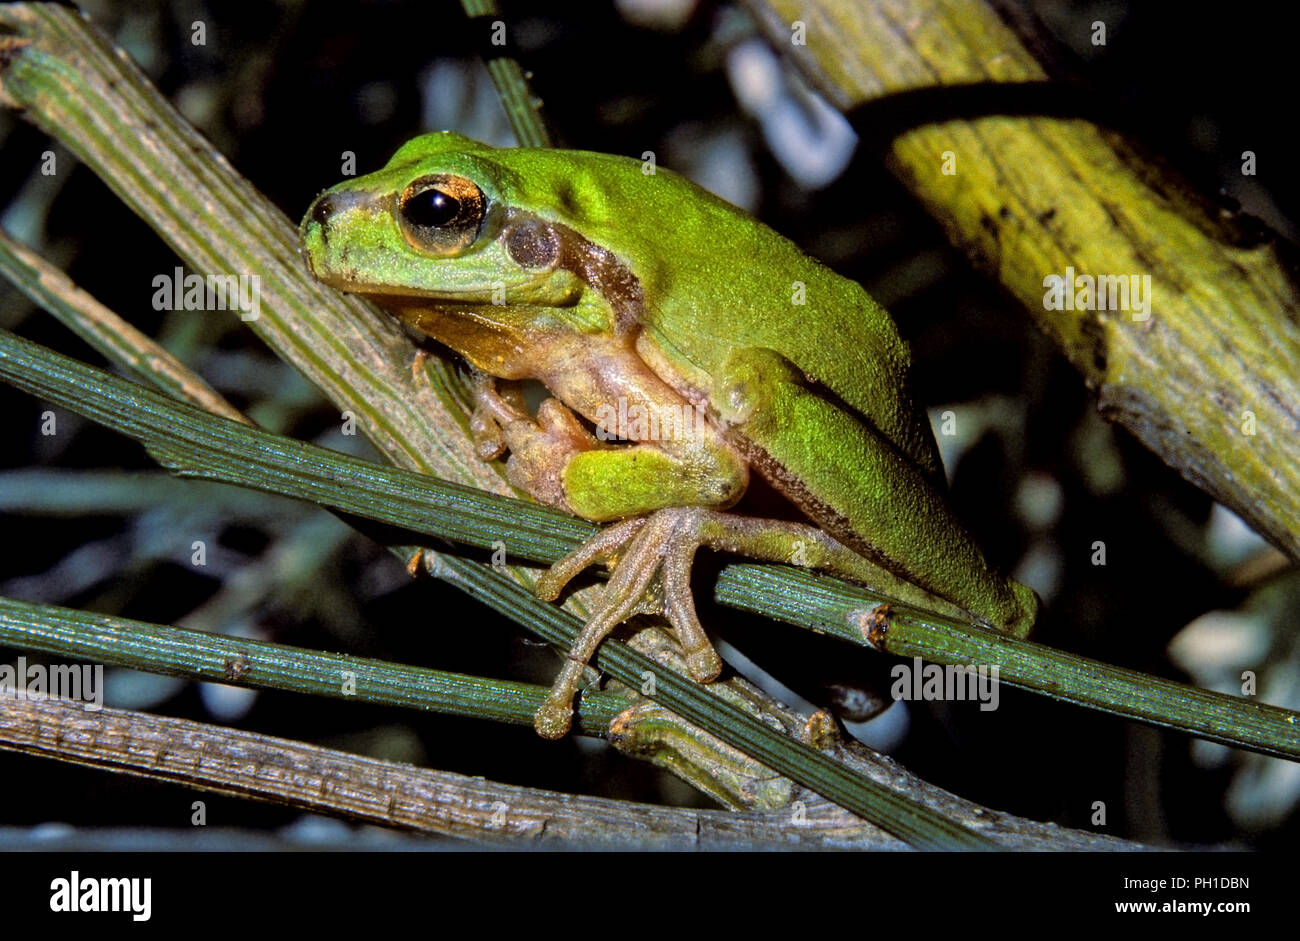 Rana de árbol mediterráneo o Stripeless Tree Frog (Hyla meridionalis). El sur de España. Europa Foto de stock